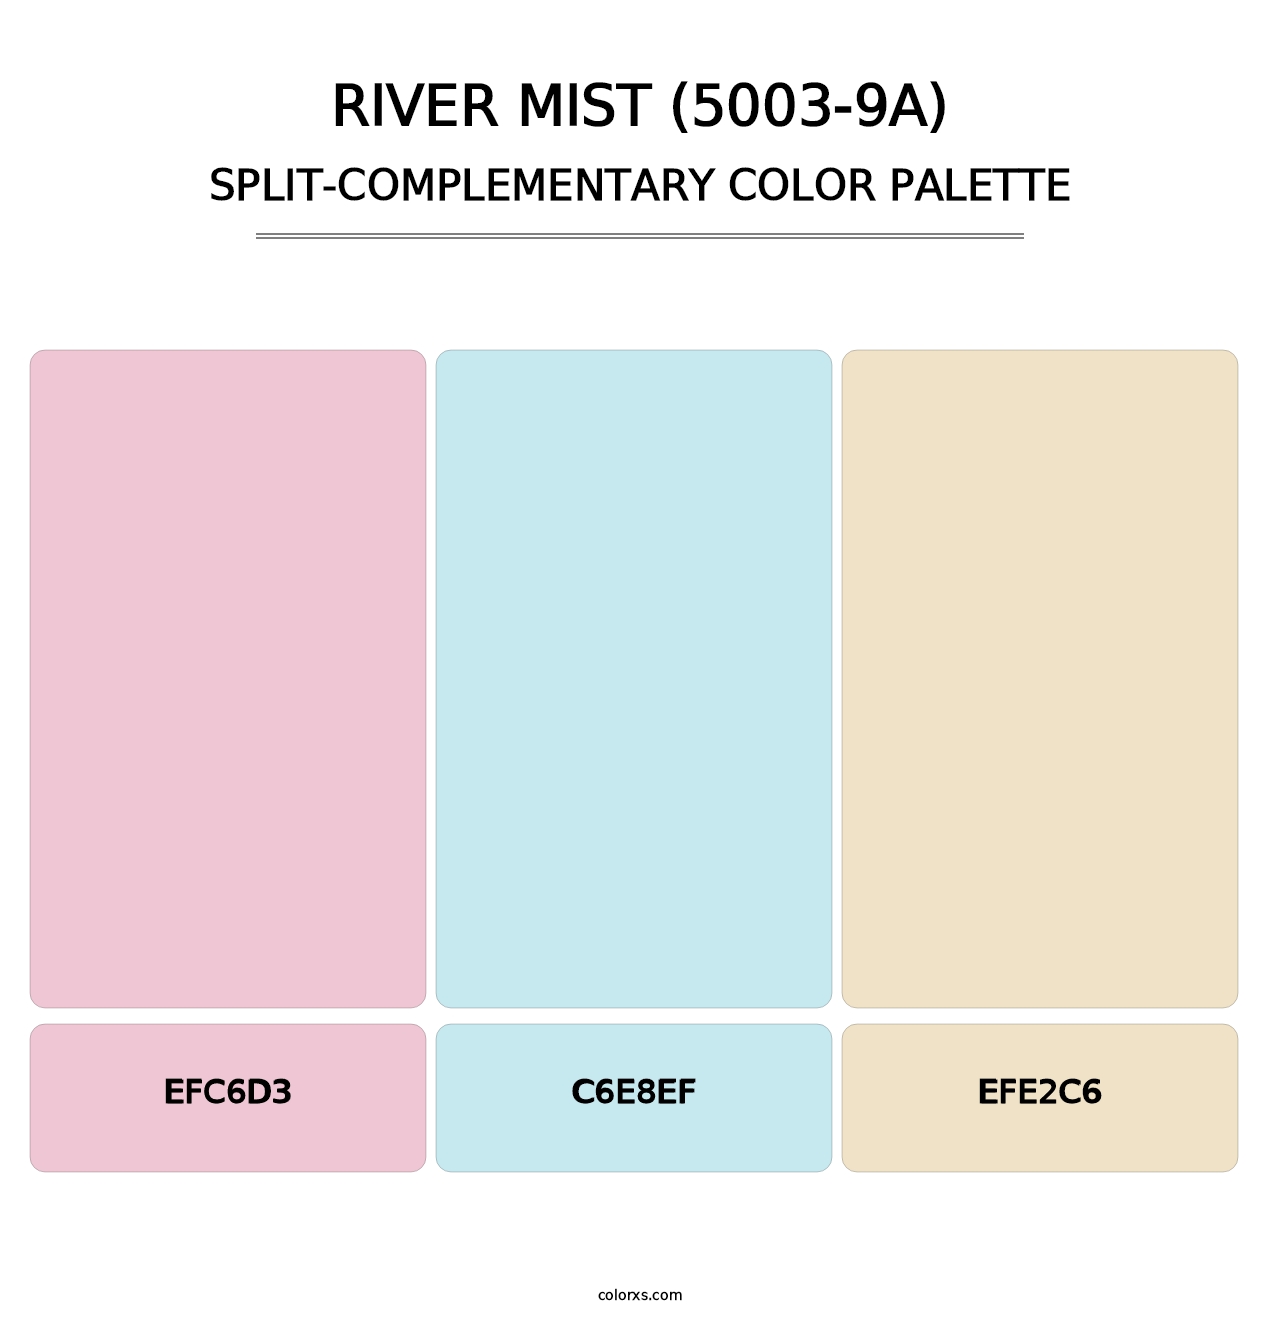 River Mist (5003-9A) - Split-Complementary Color Palette